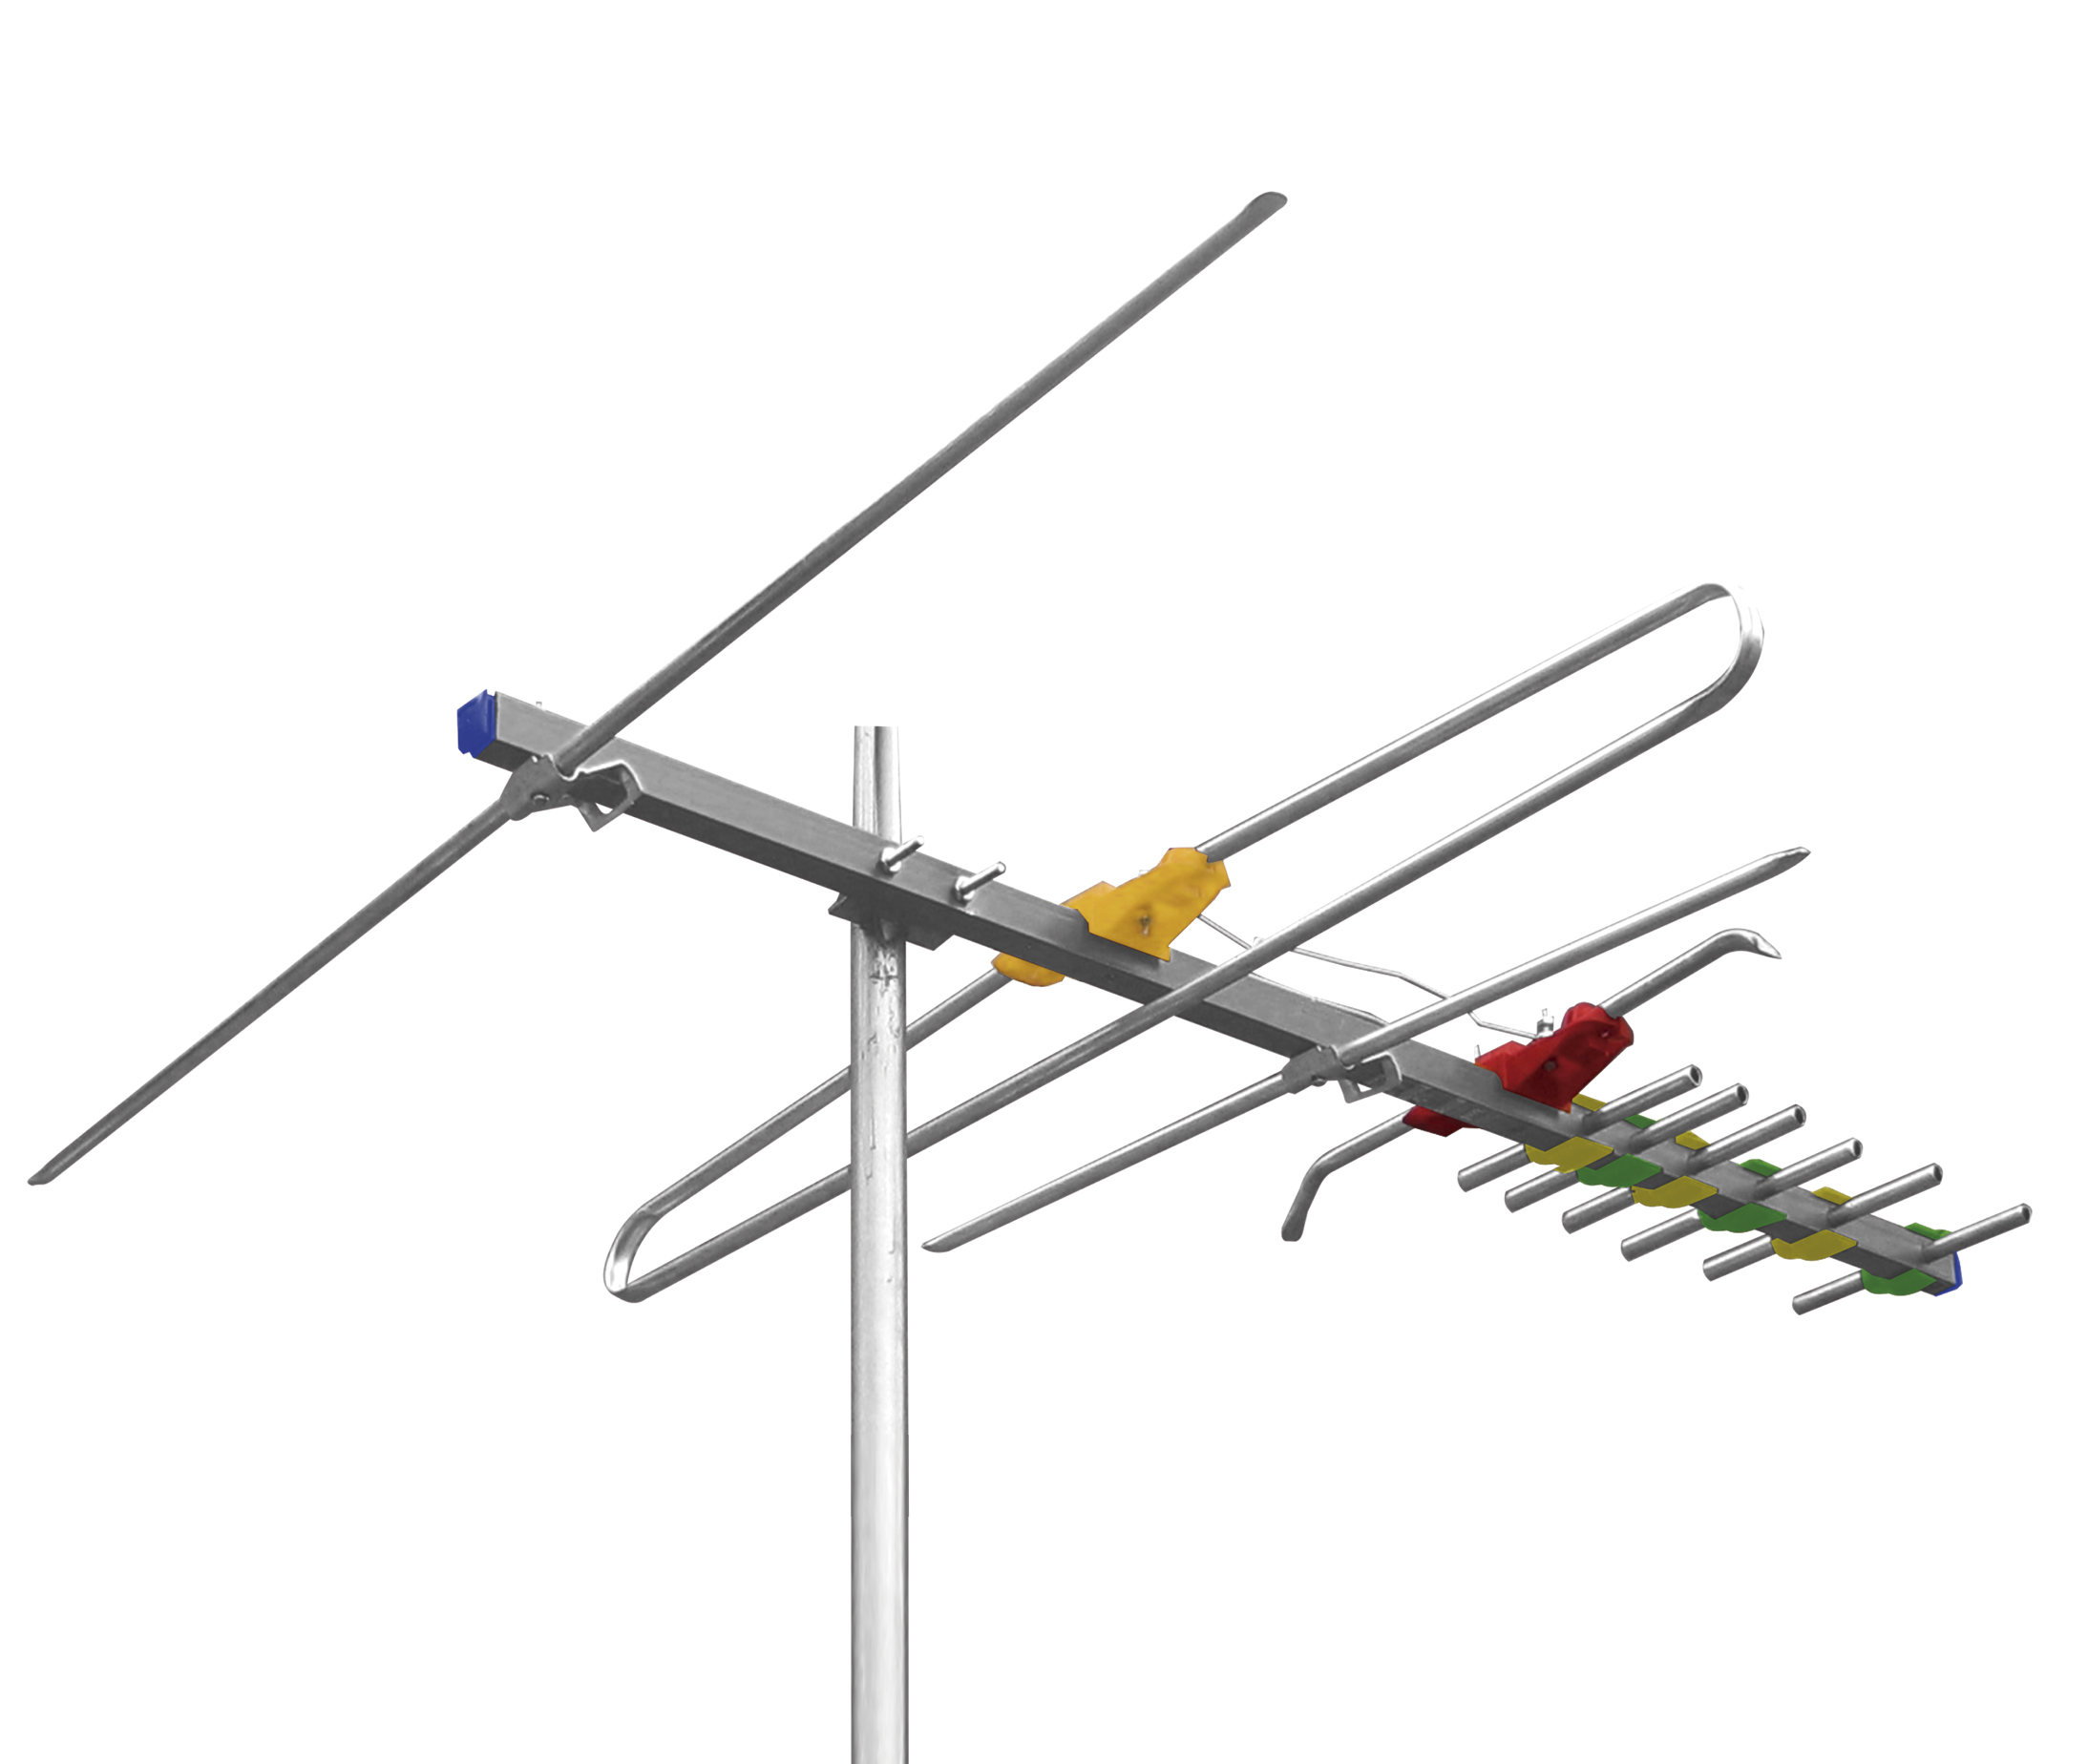 Antena Aerea Wia con 10 metros de cable